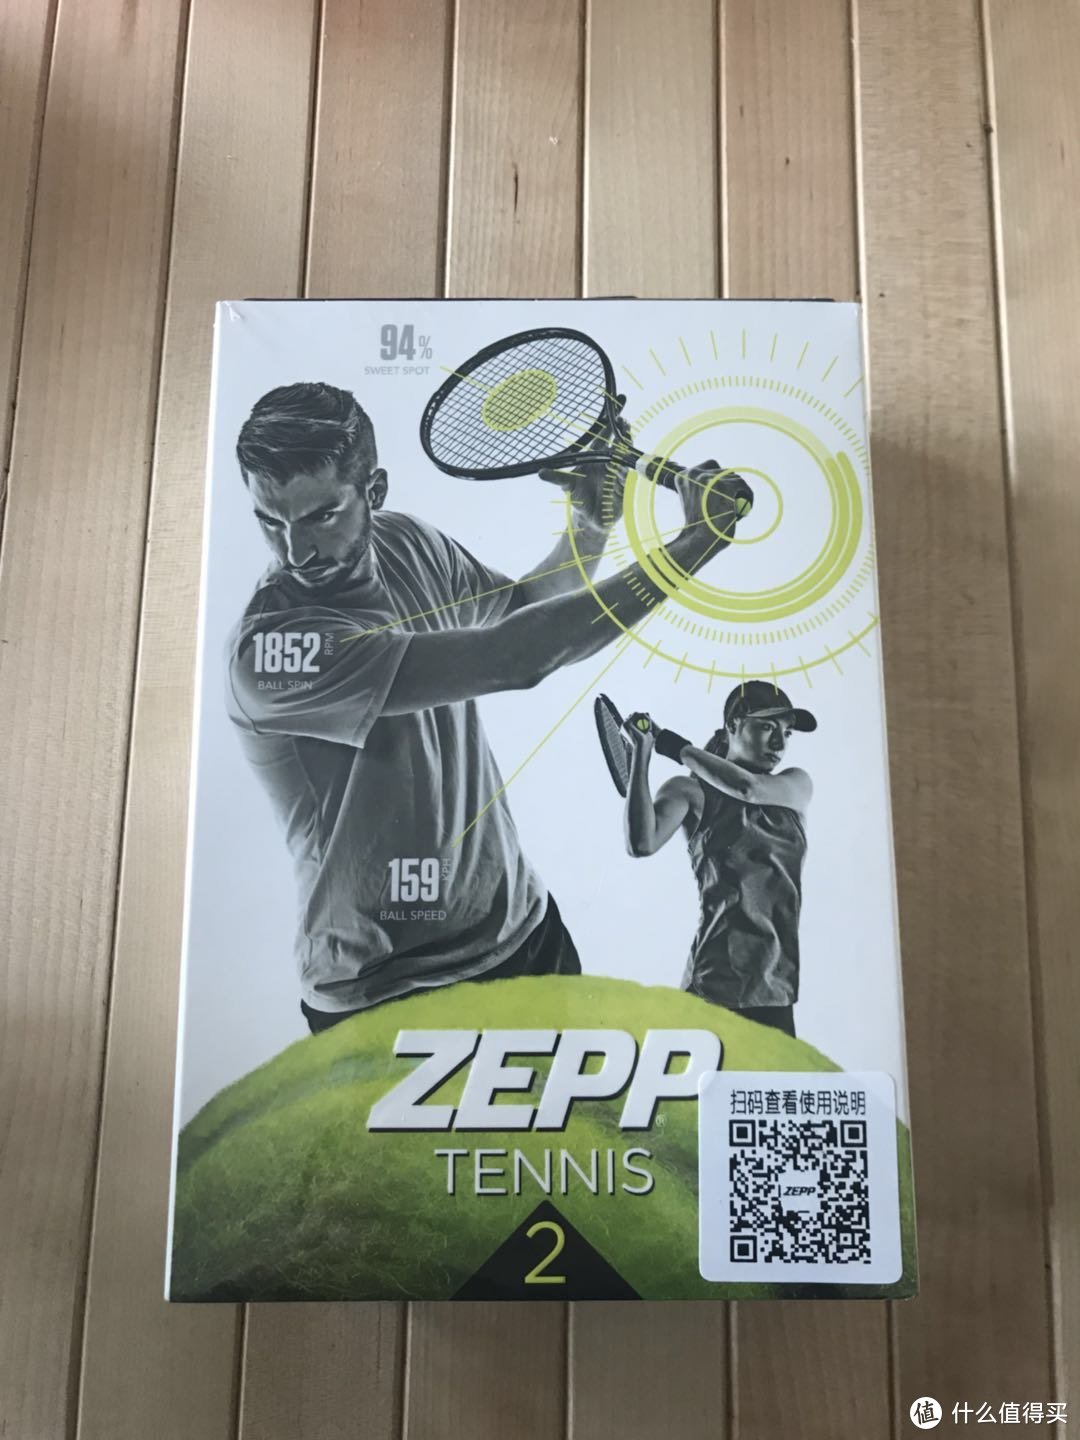 运动和科技的结合ZEPP Tennis 2 网球传感器